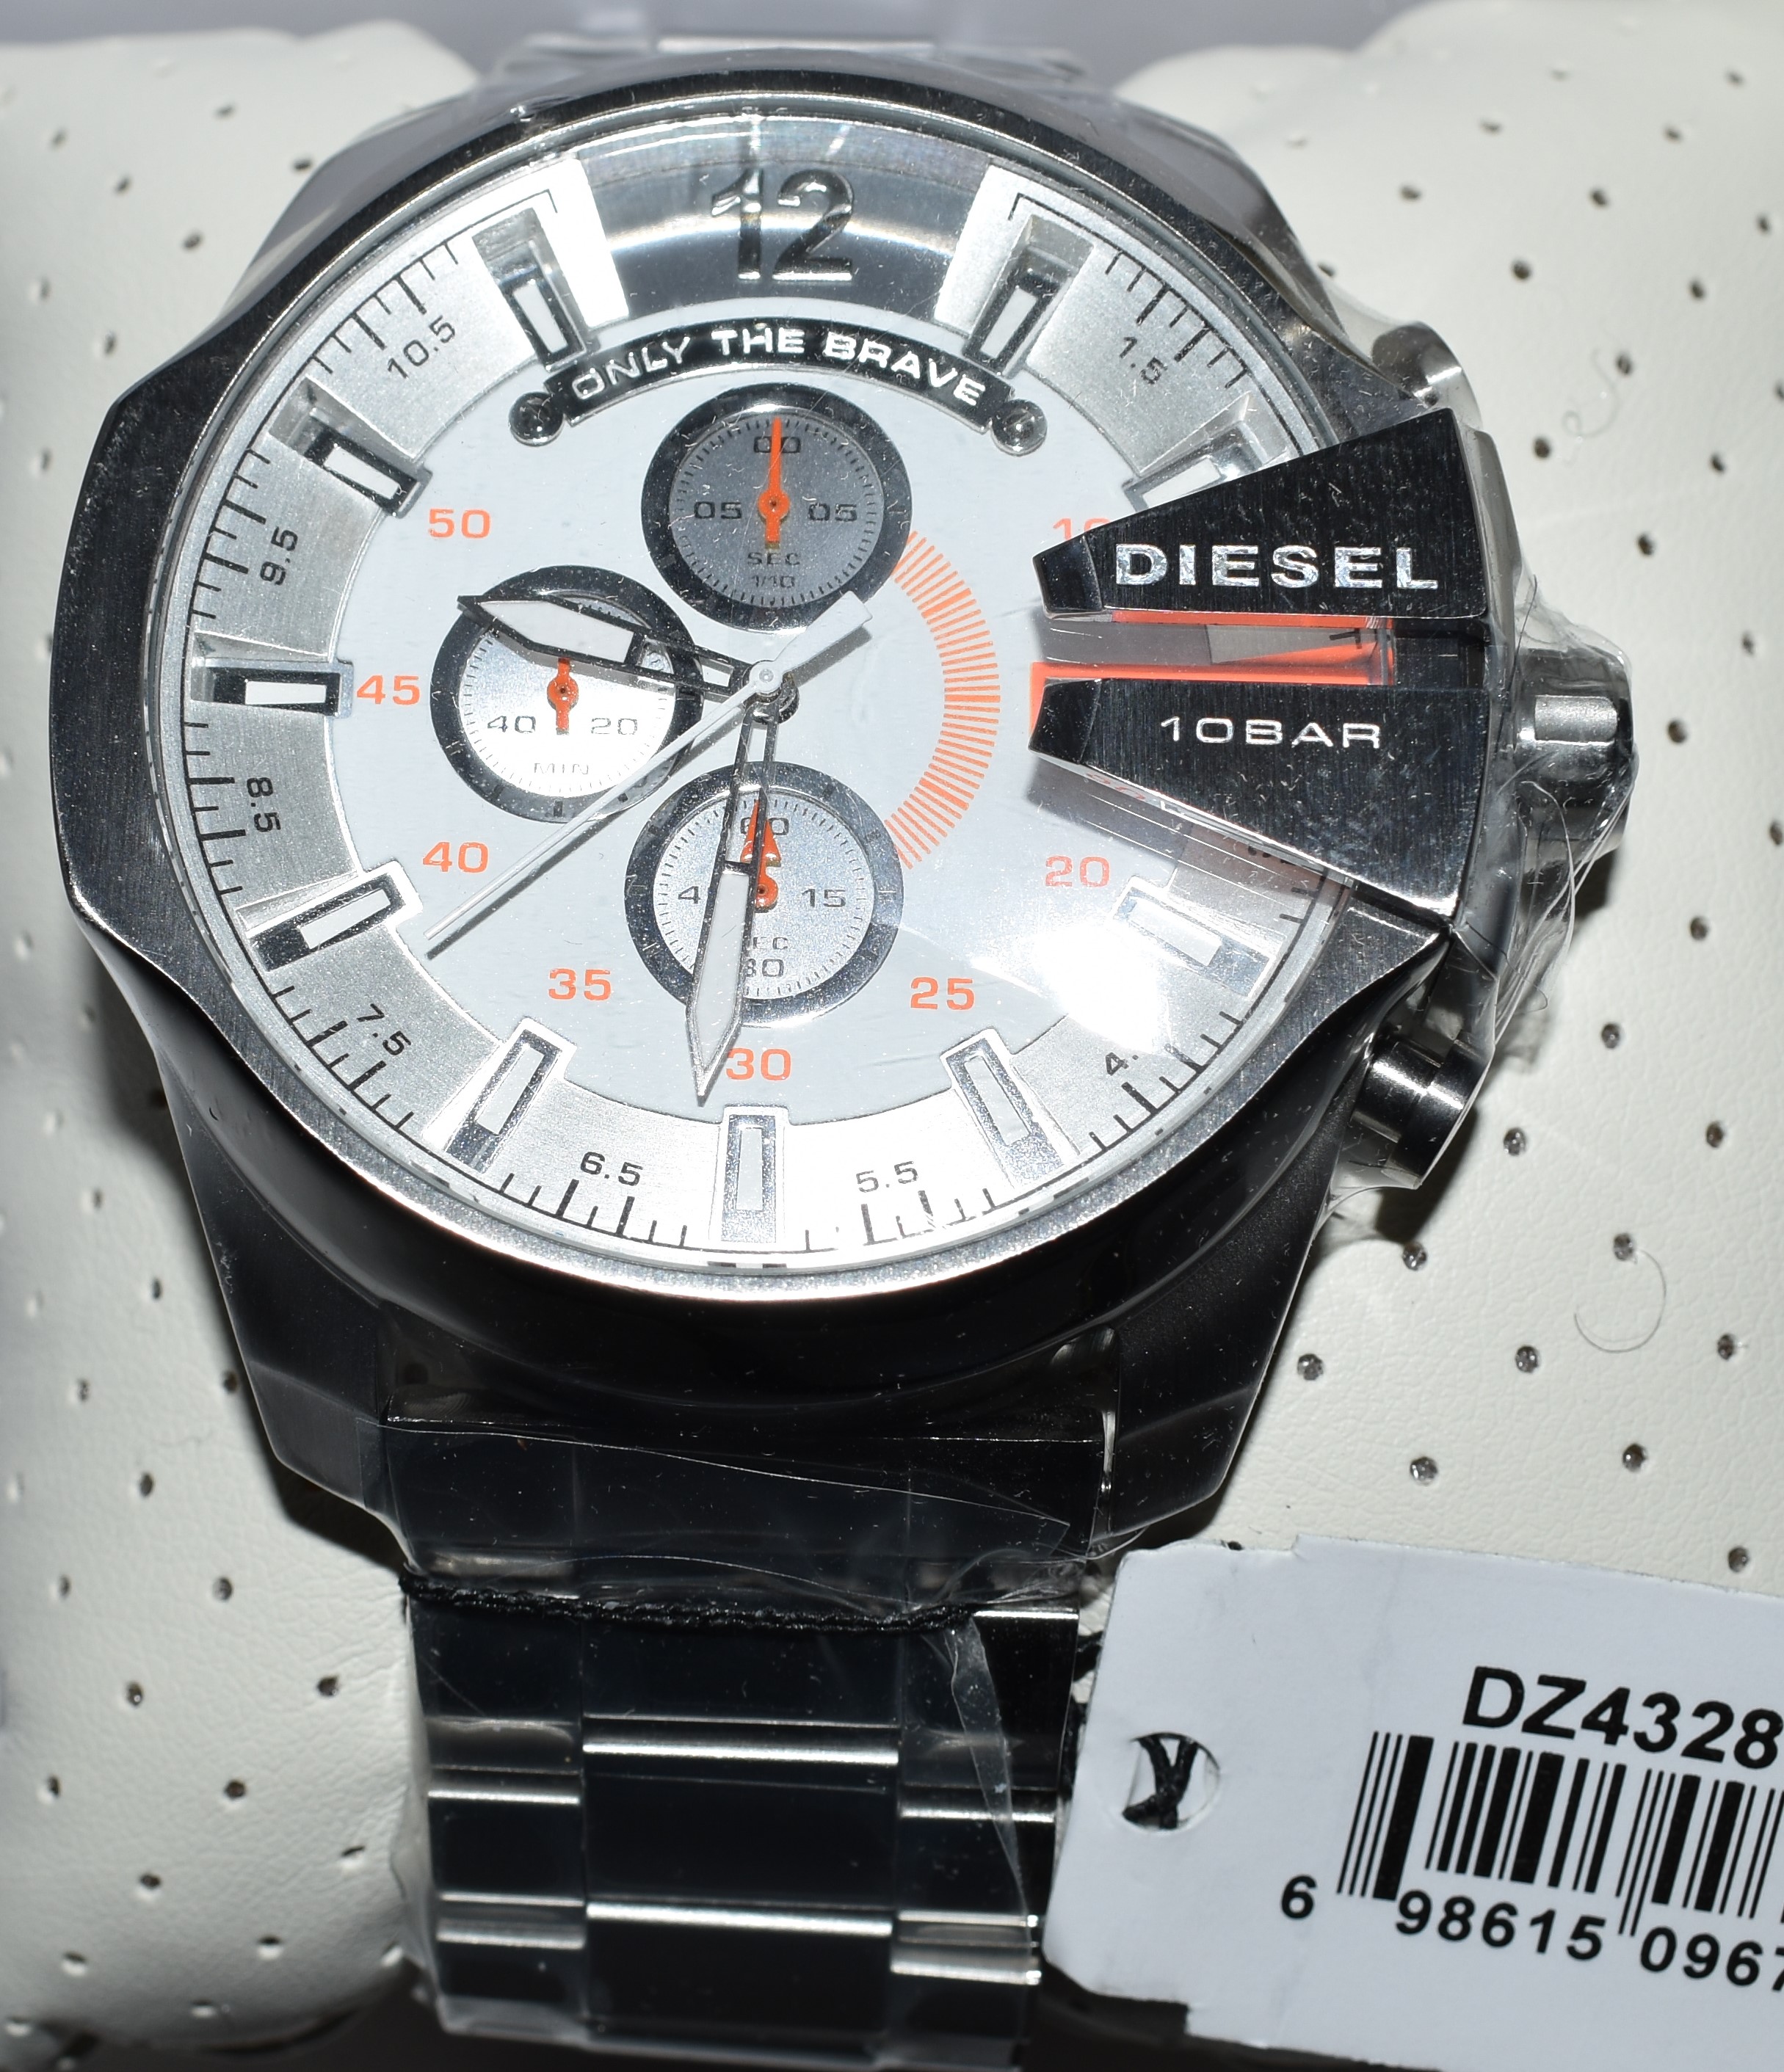 Diesel Men's Watch DZ4328